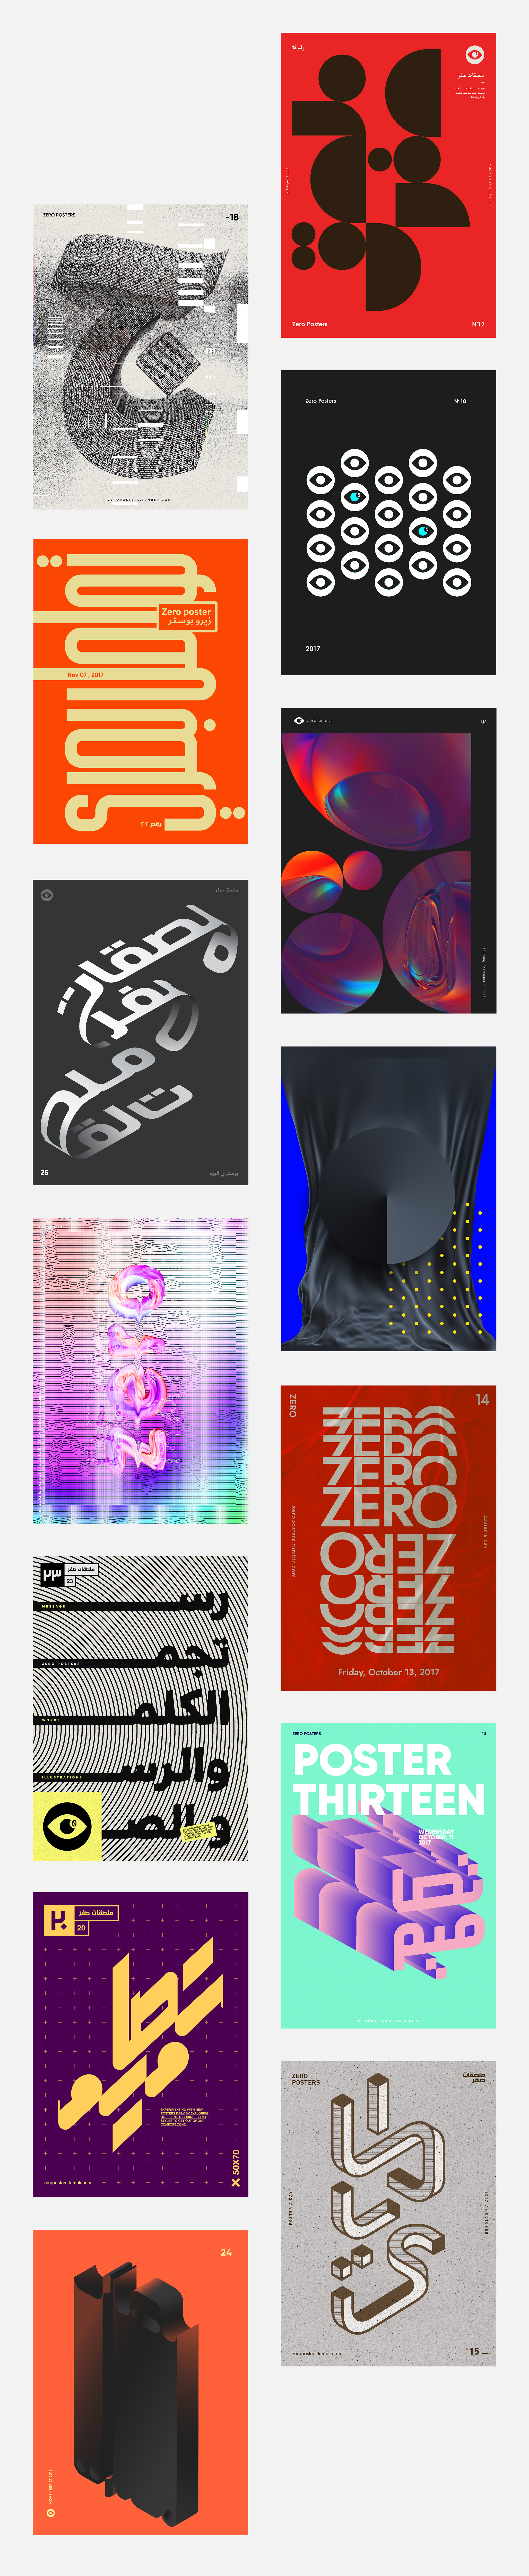 Diseños experimental: Zero Posters Vol.1